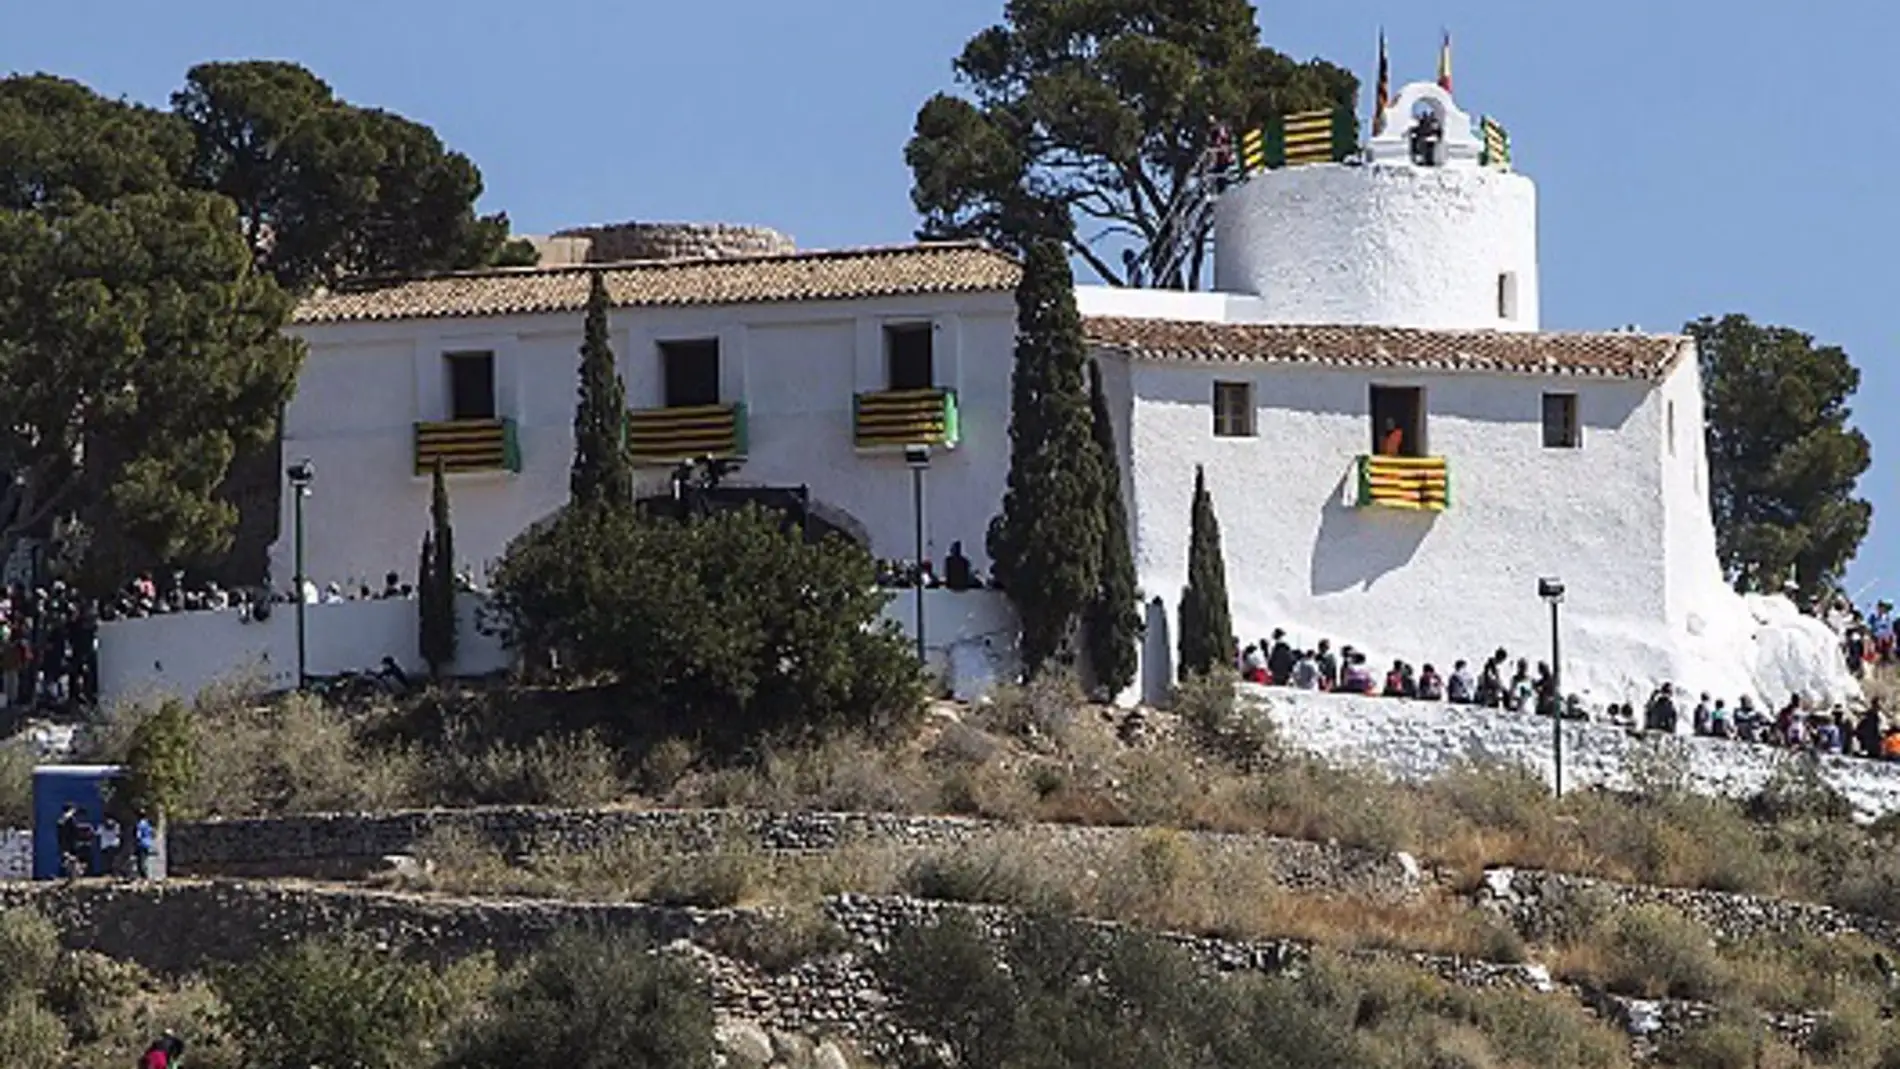 El festival "Nits d'estiu a l'ermita de la Magdalena" vuelve a Castellón por tercer año consecutivo 